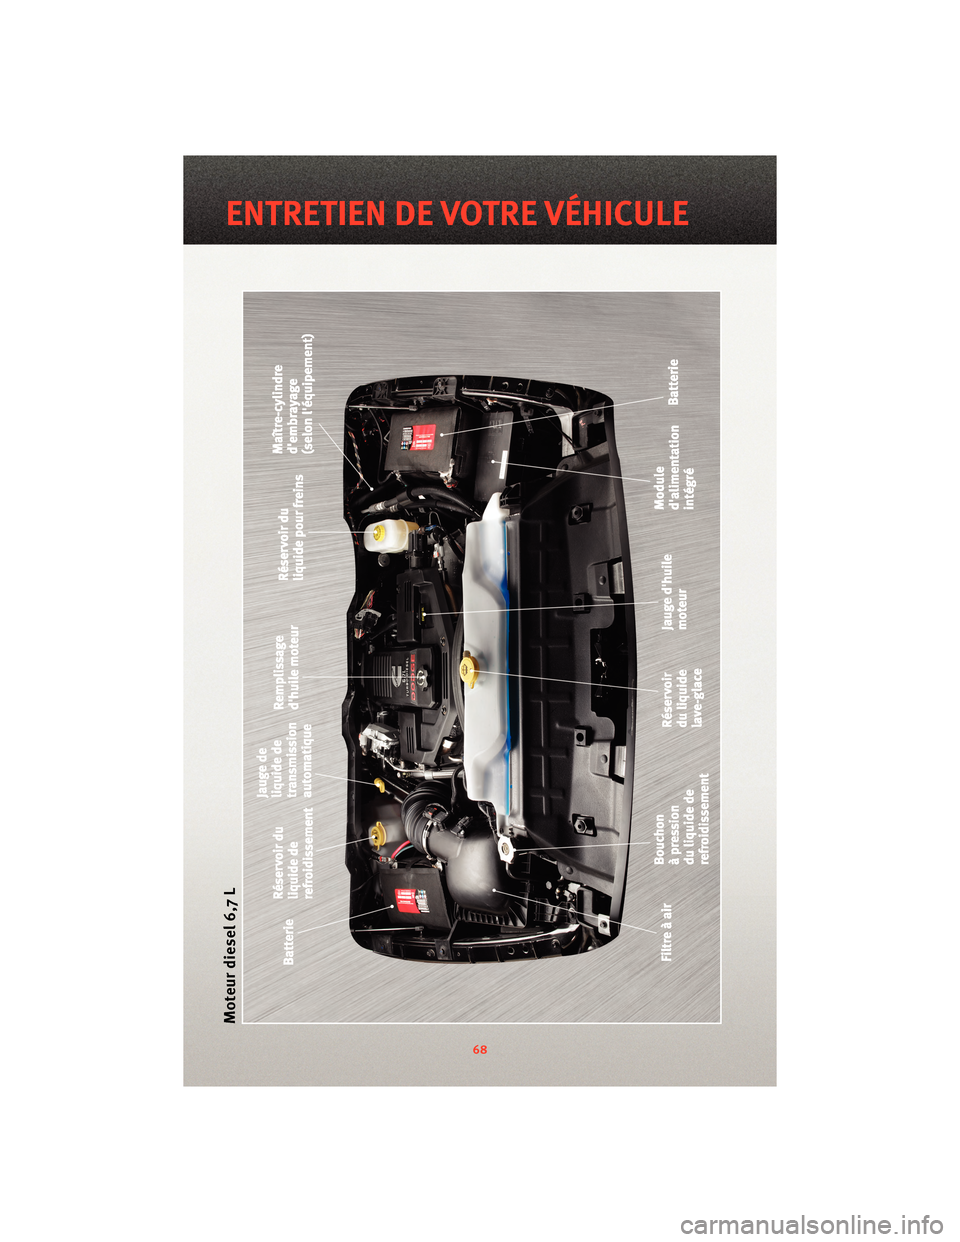 Ram 1500 2010  Guide dutilisateur (in French) Moteur diesel 6,7 L
68
ENTRETIEN DE VOTRE VÉHICULE 